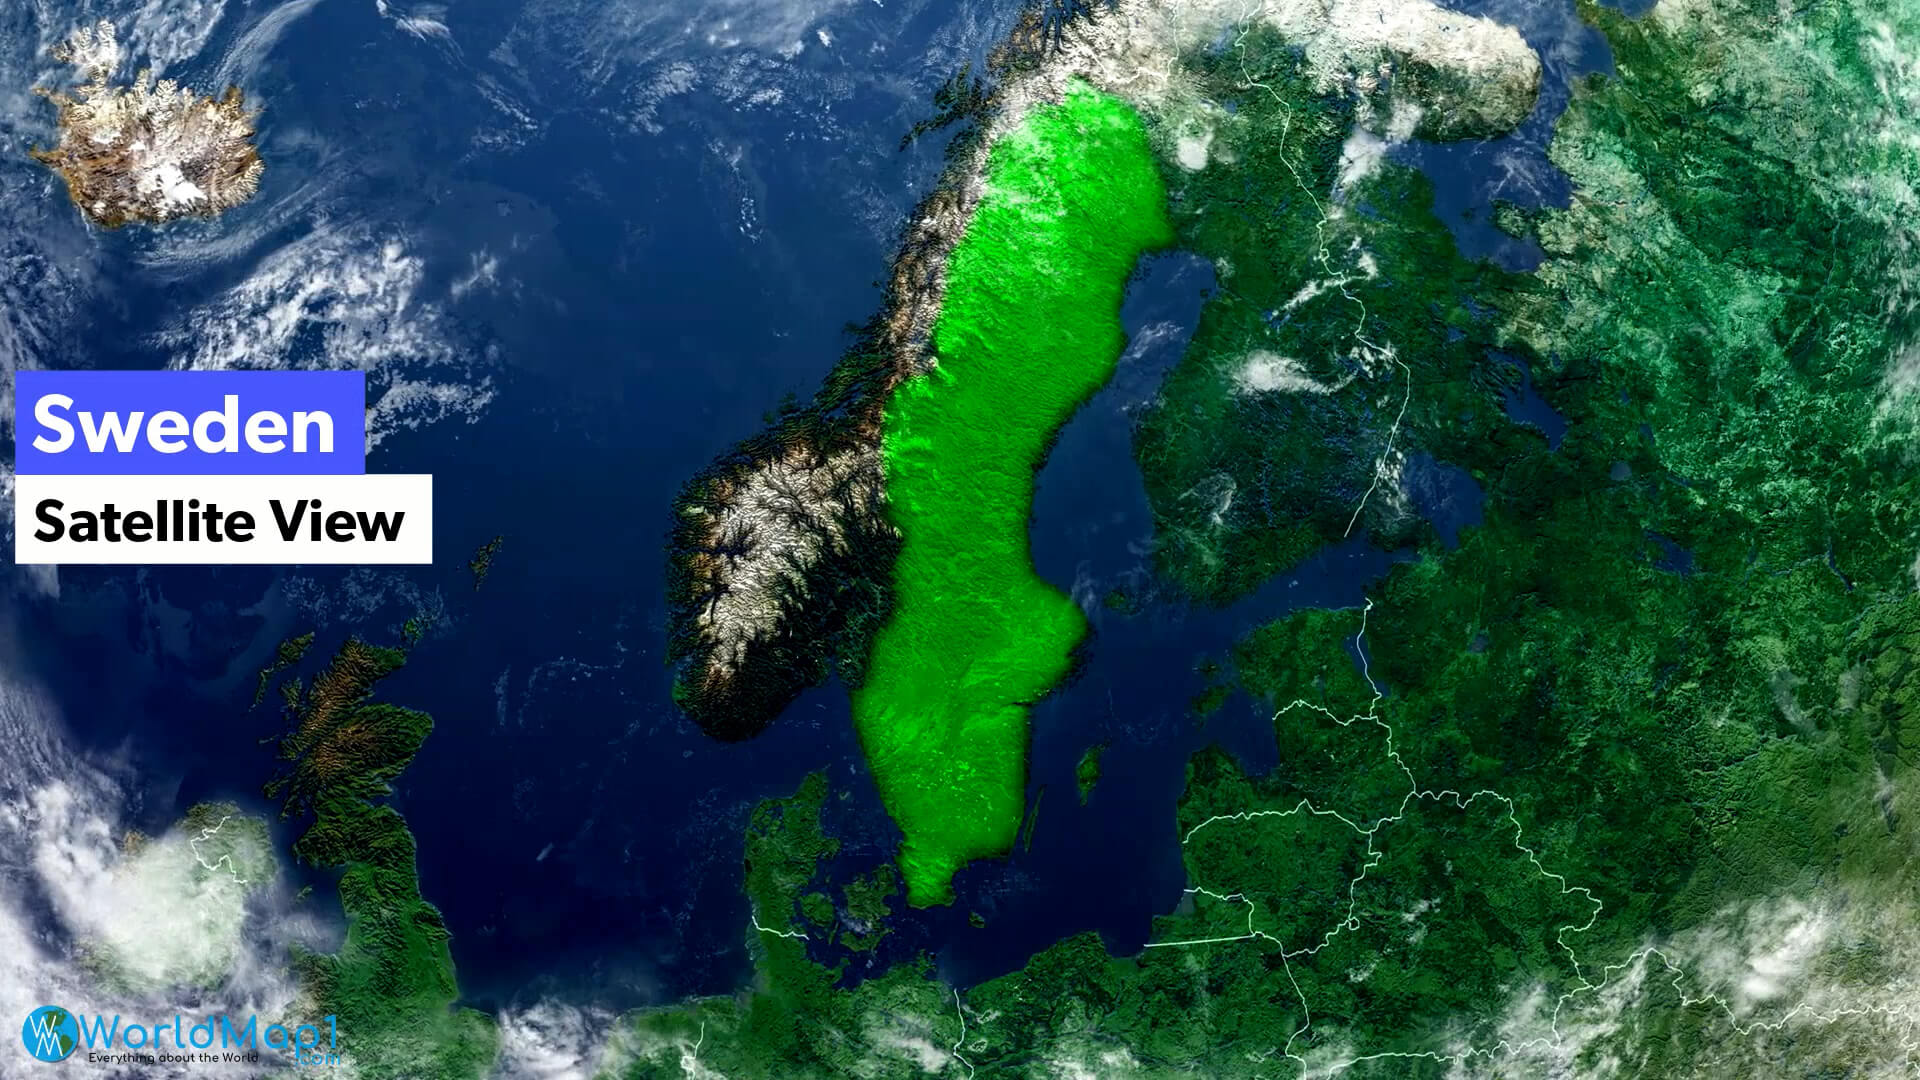 Sweden Satellite View